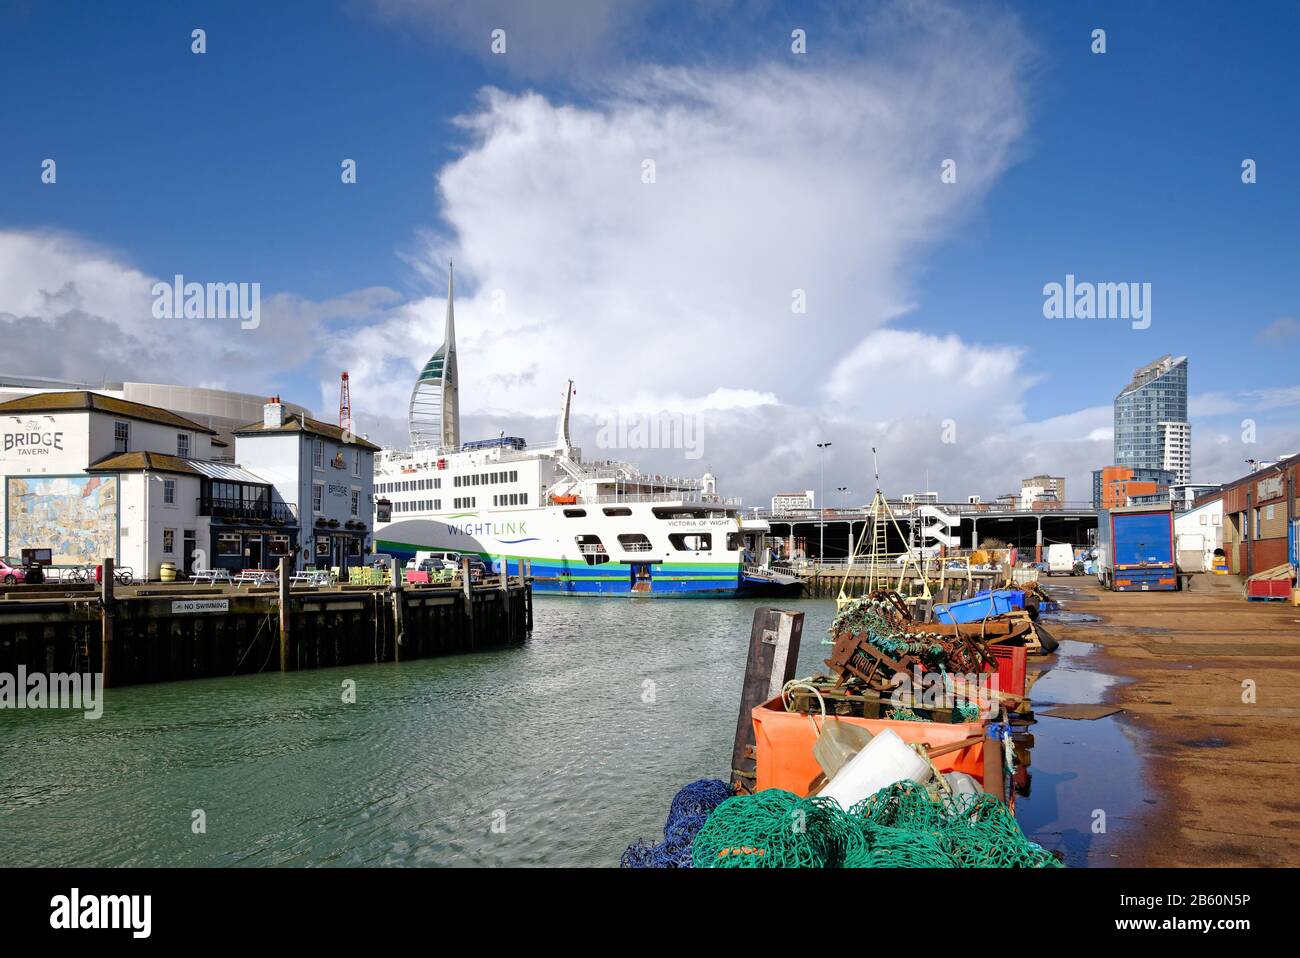 Der historische Kamberhafen in Old Portsmouth mit zwei Autofähren von Wightlink an ihren Anlegestellen, Portsmouth Hampshire England UK Stockfoto